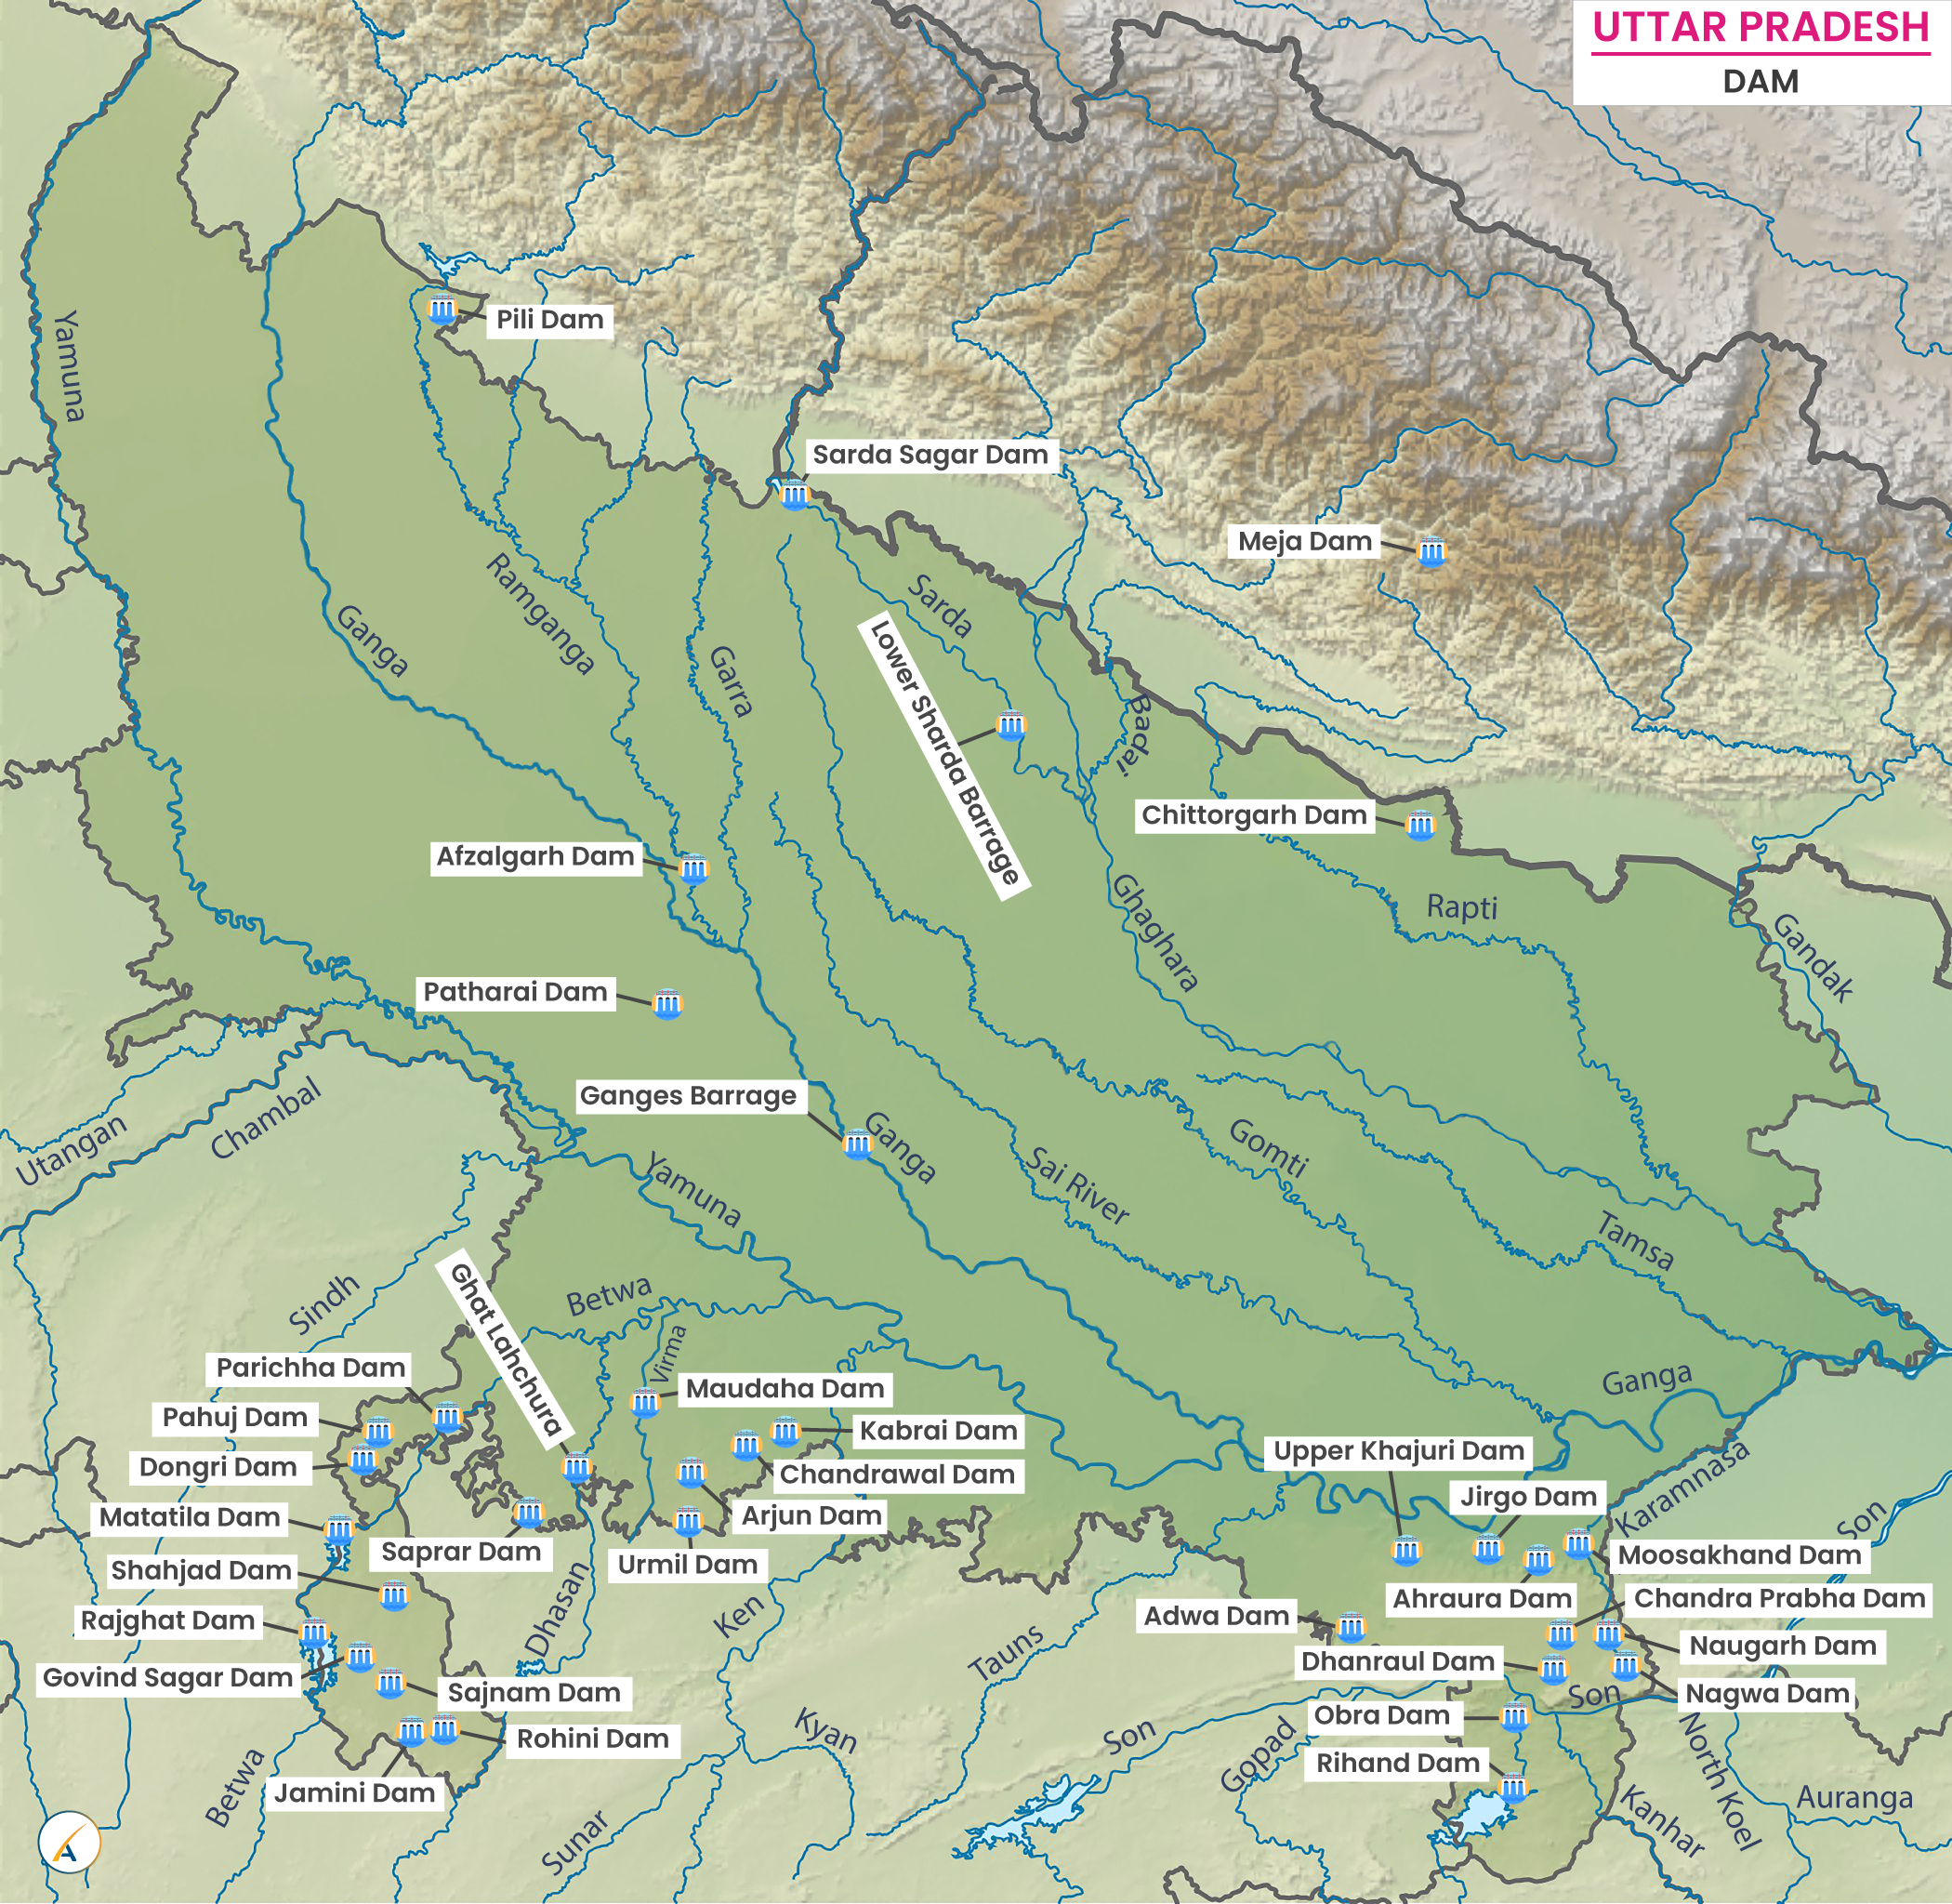 Major Dams in Uttar Pradesh (Map)